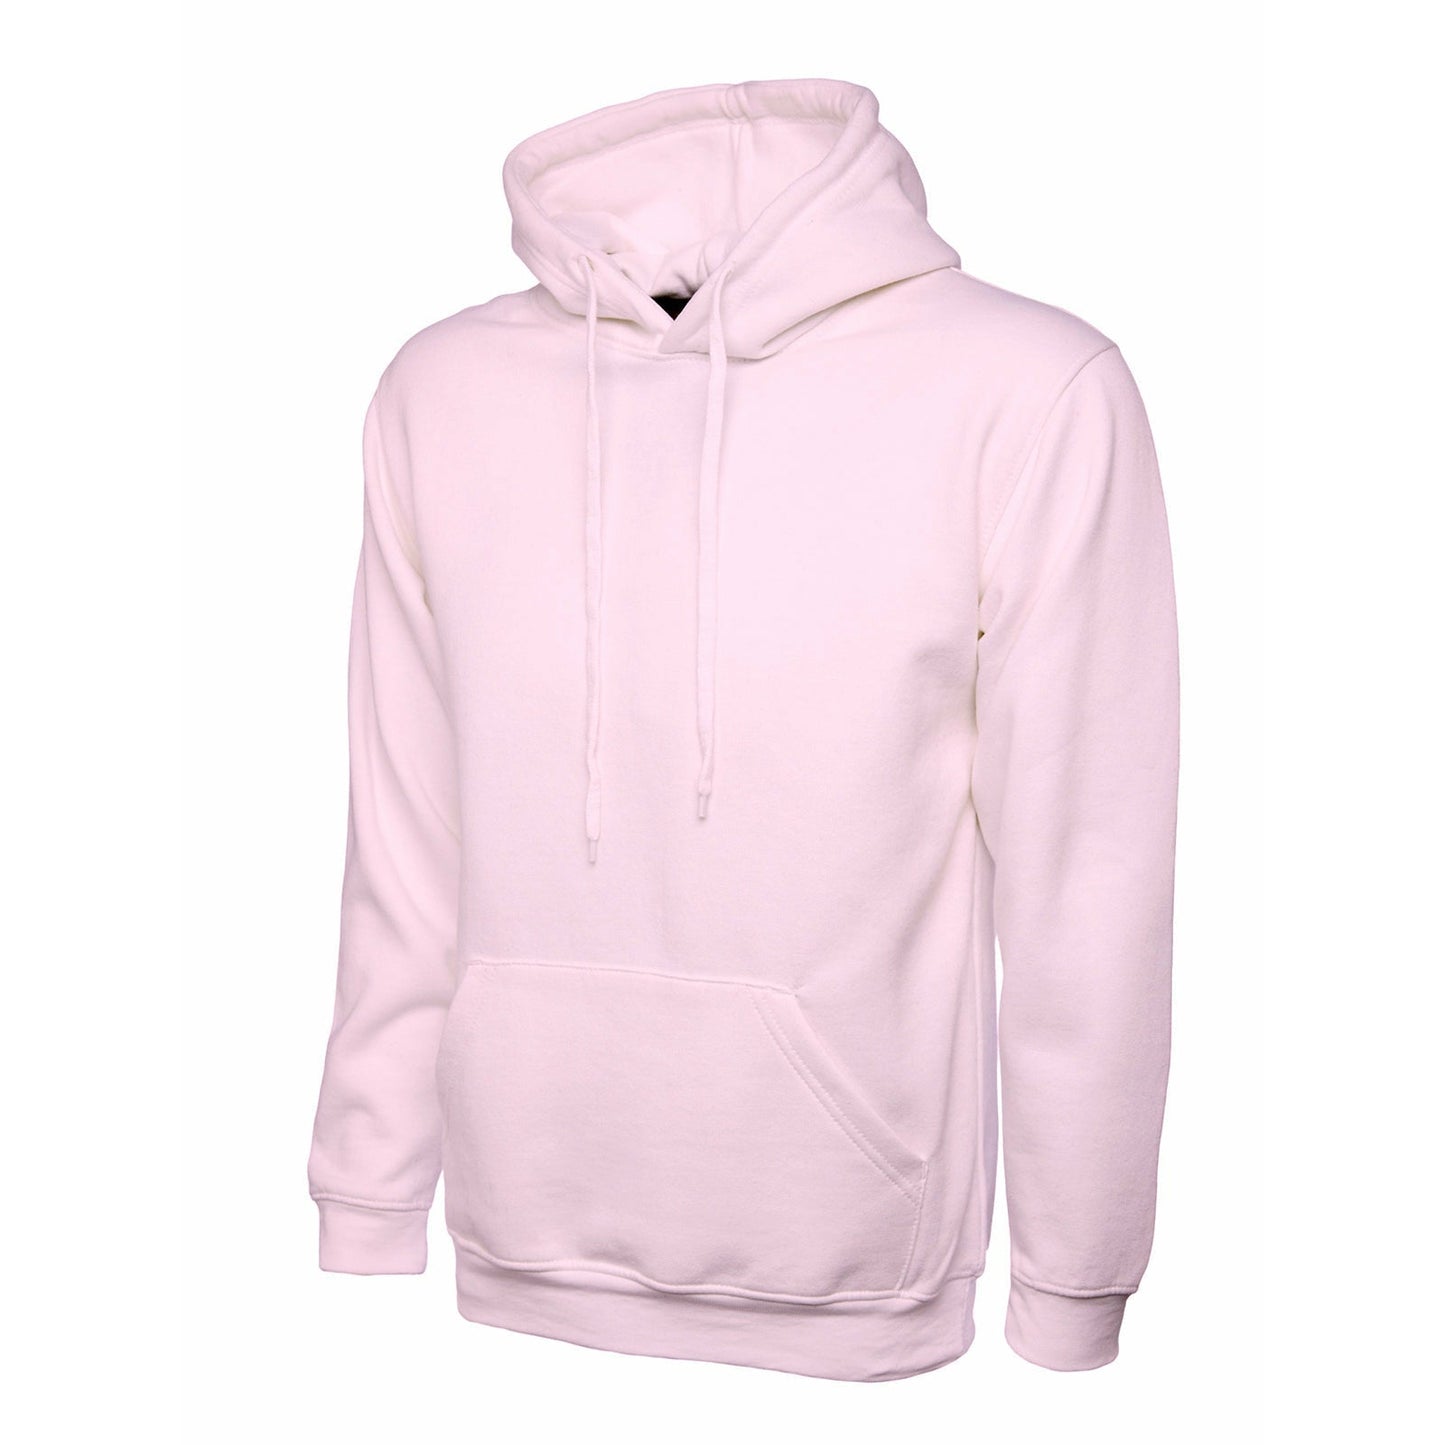 Personalised Custom Hoodie - Pink